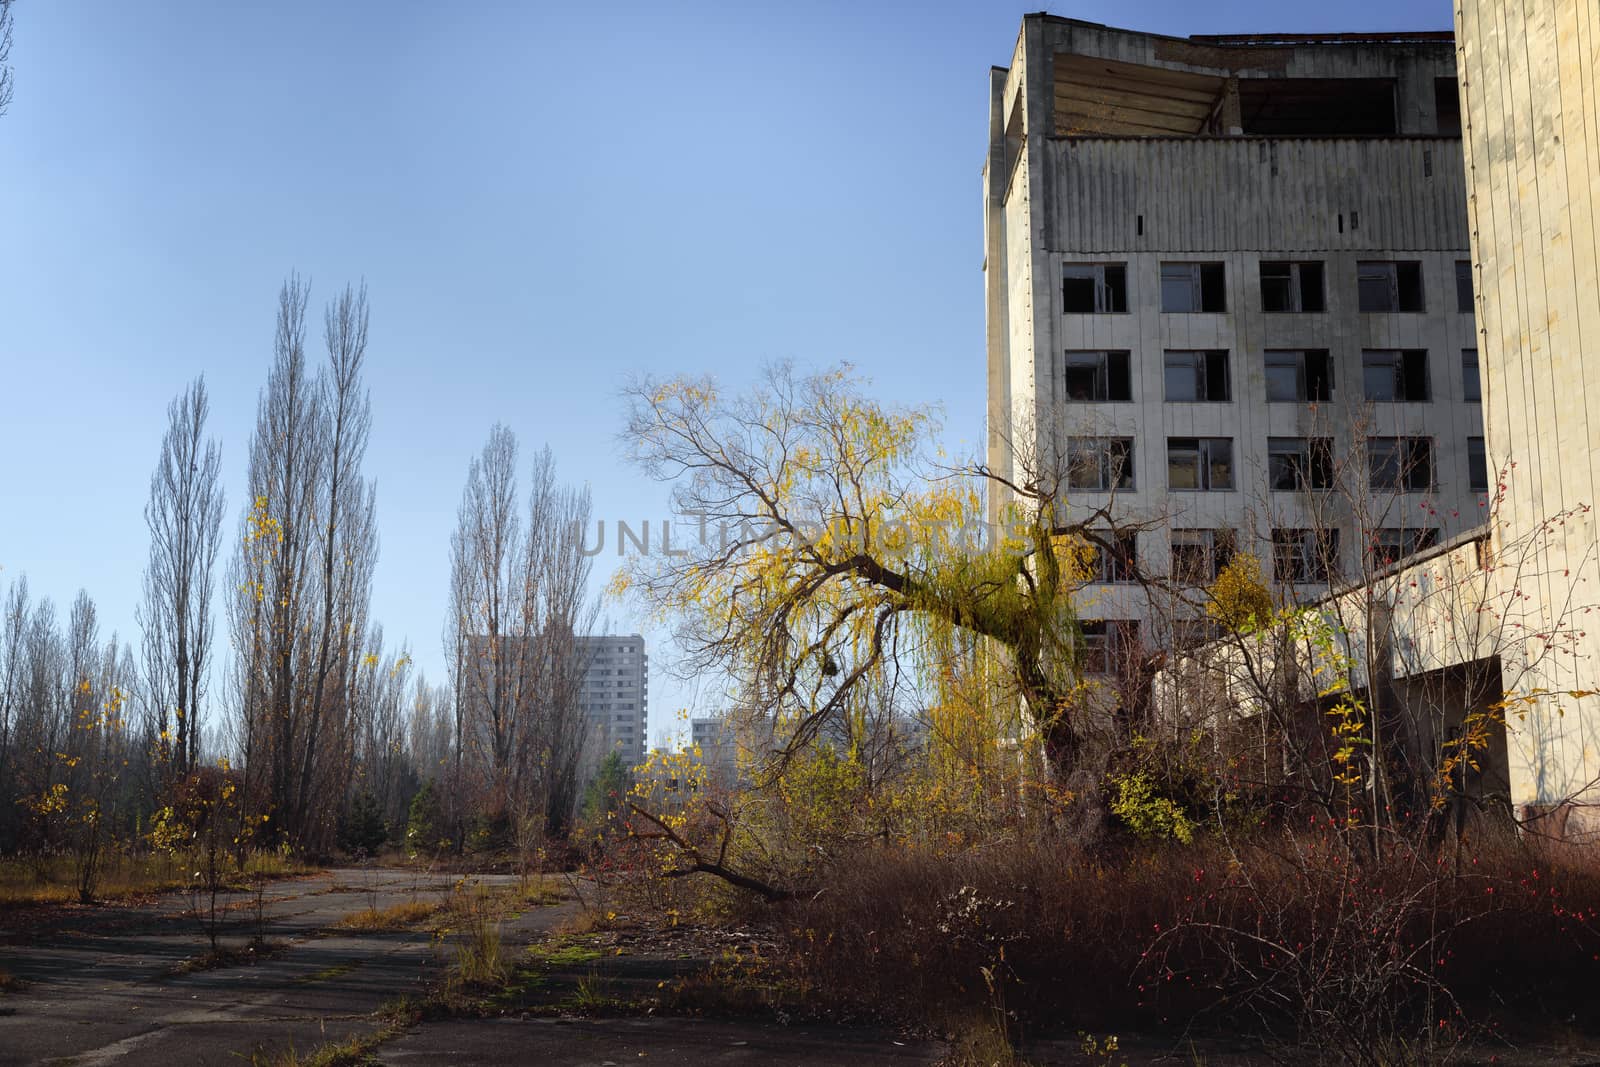 Abandoned city of Pripyat 2019 by svedoliver